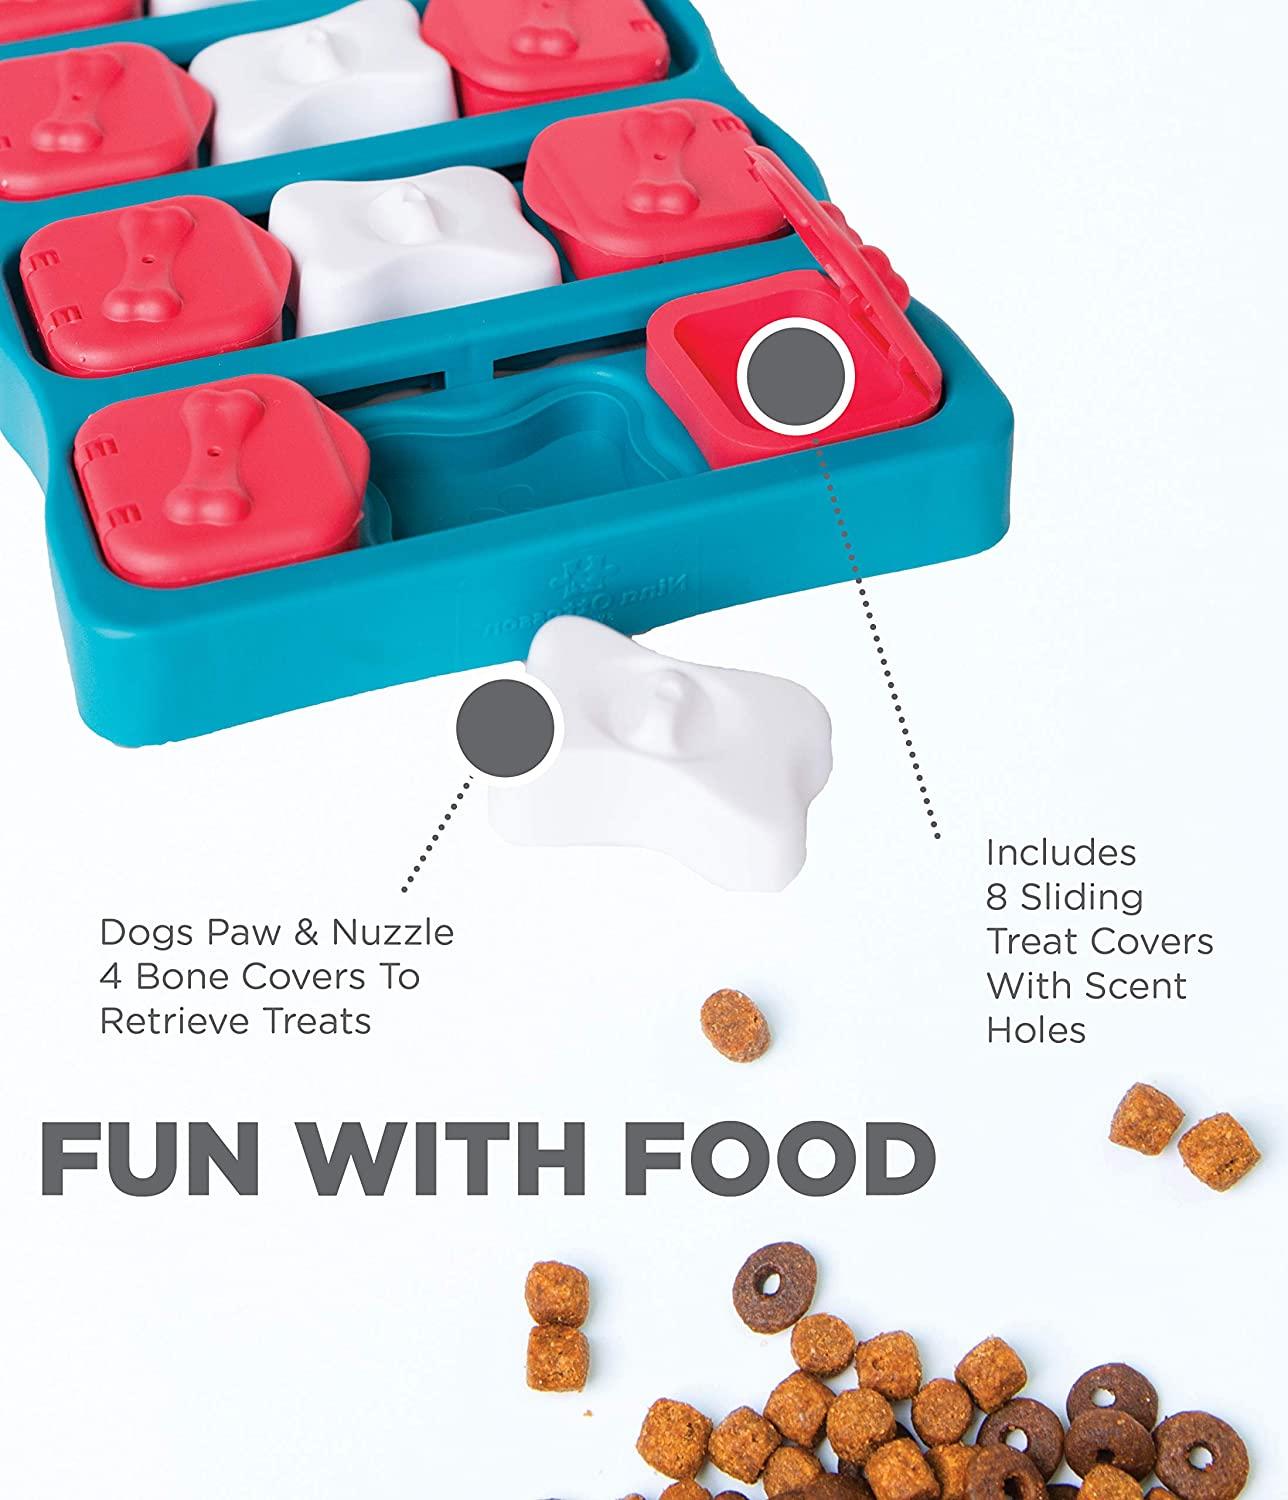 Pet Supplies : Outward Hound Nina Ottosson Challenge Slider Interactive  Treat Puzzle Dog Toy, Advanced 